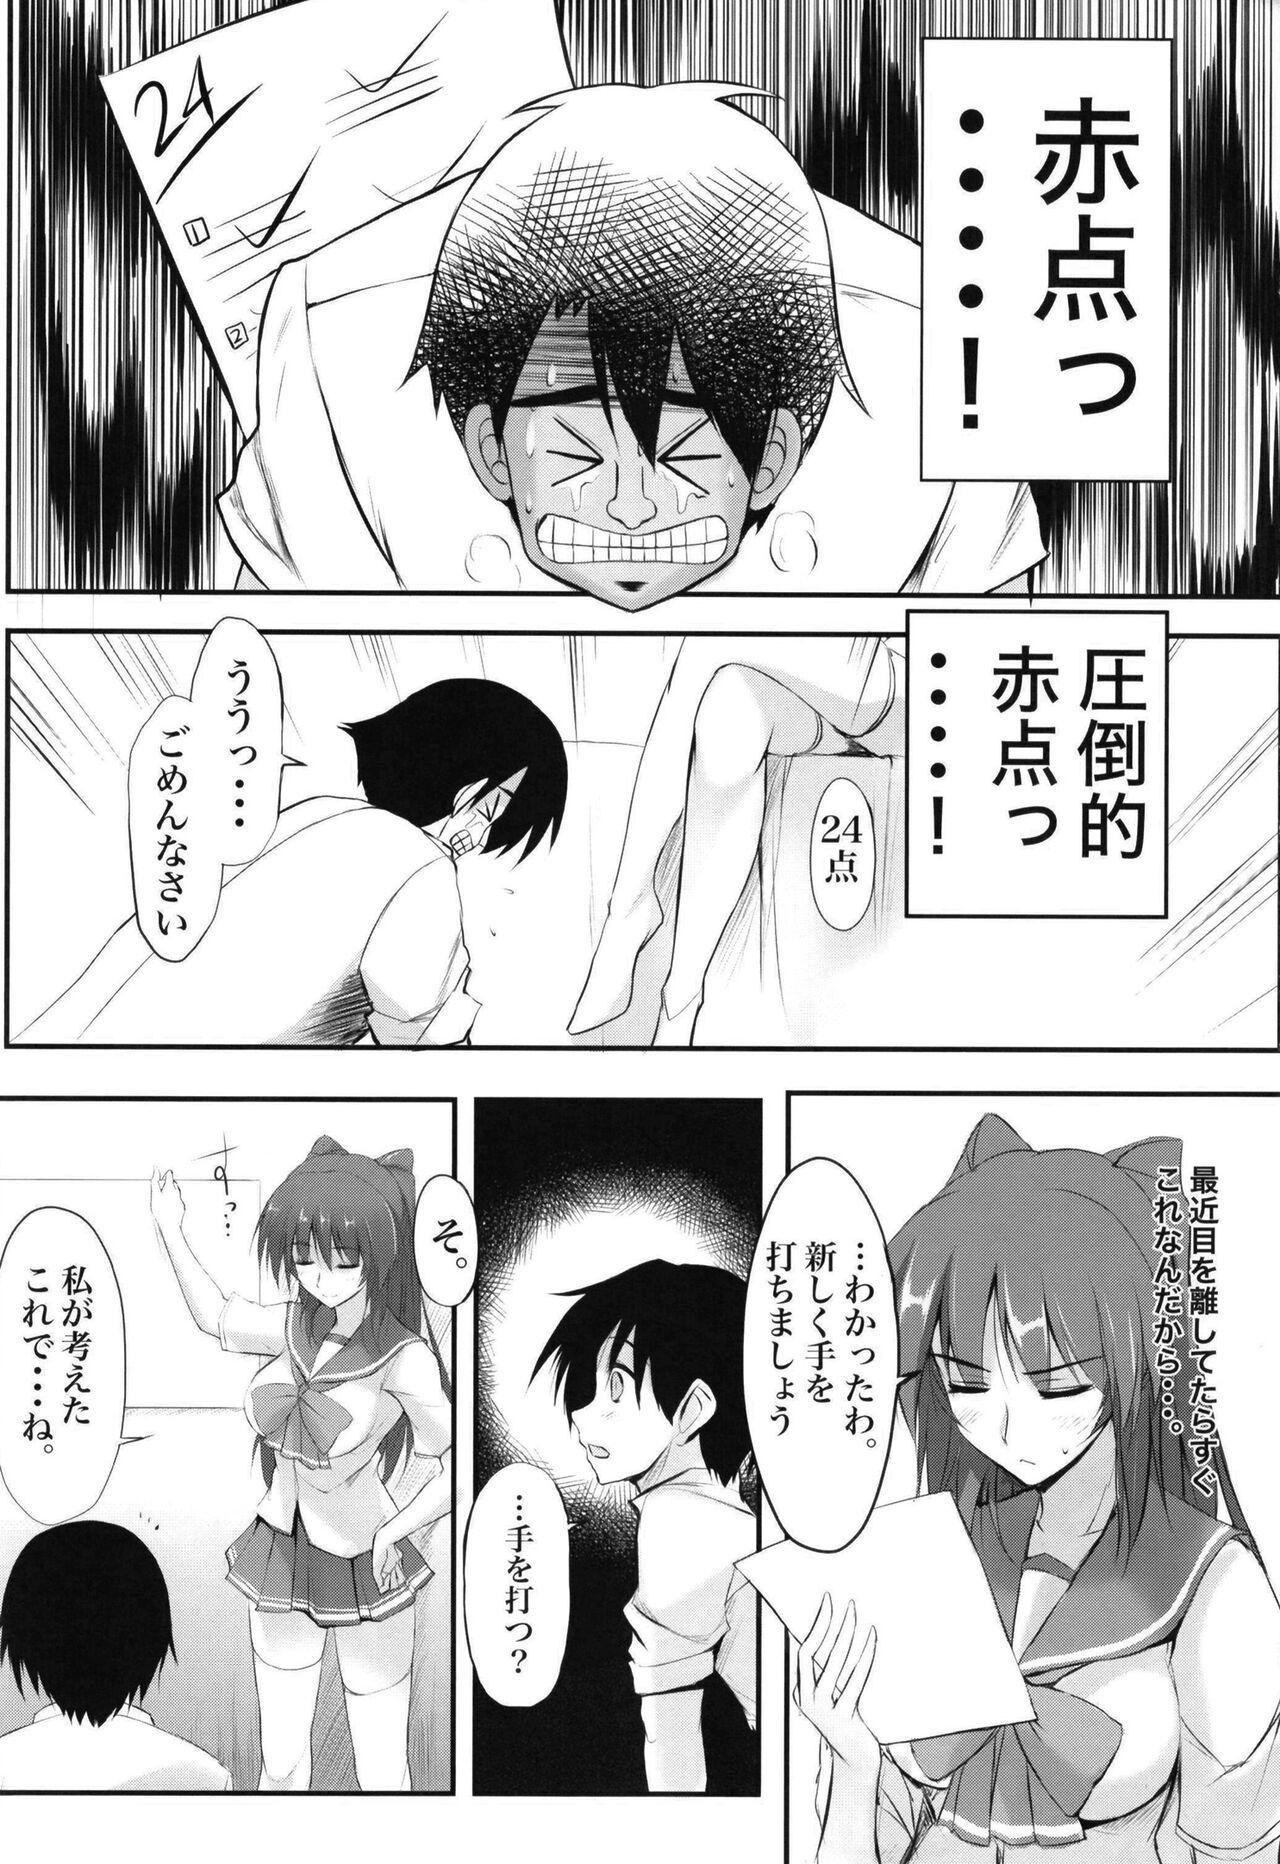 Publico Akaten Sensei Inran Semi - Toheart2 Lick - Page 3